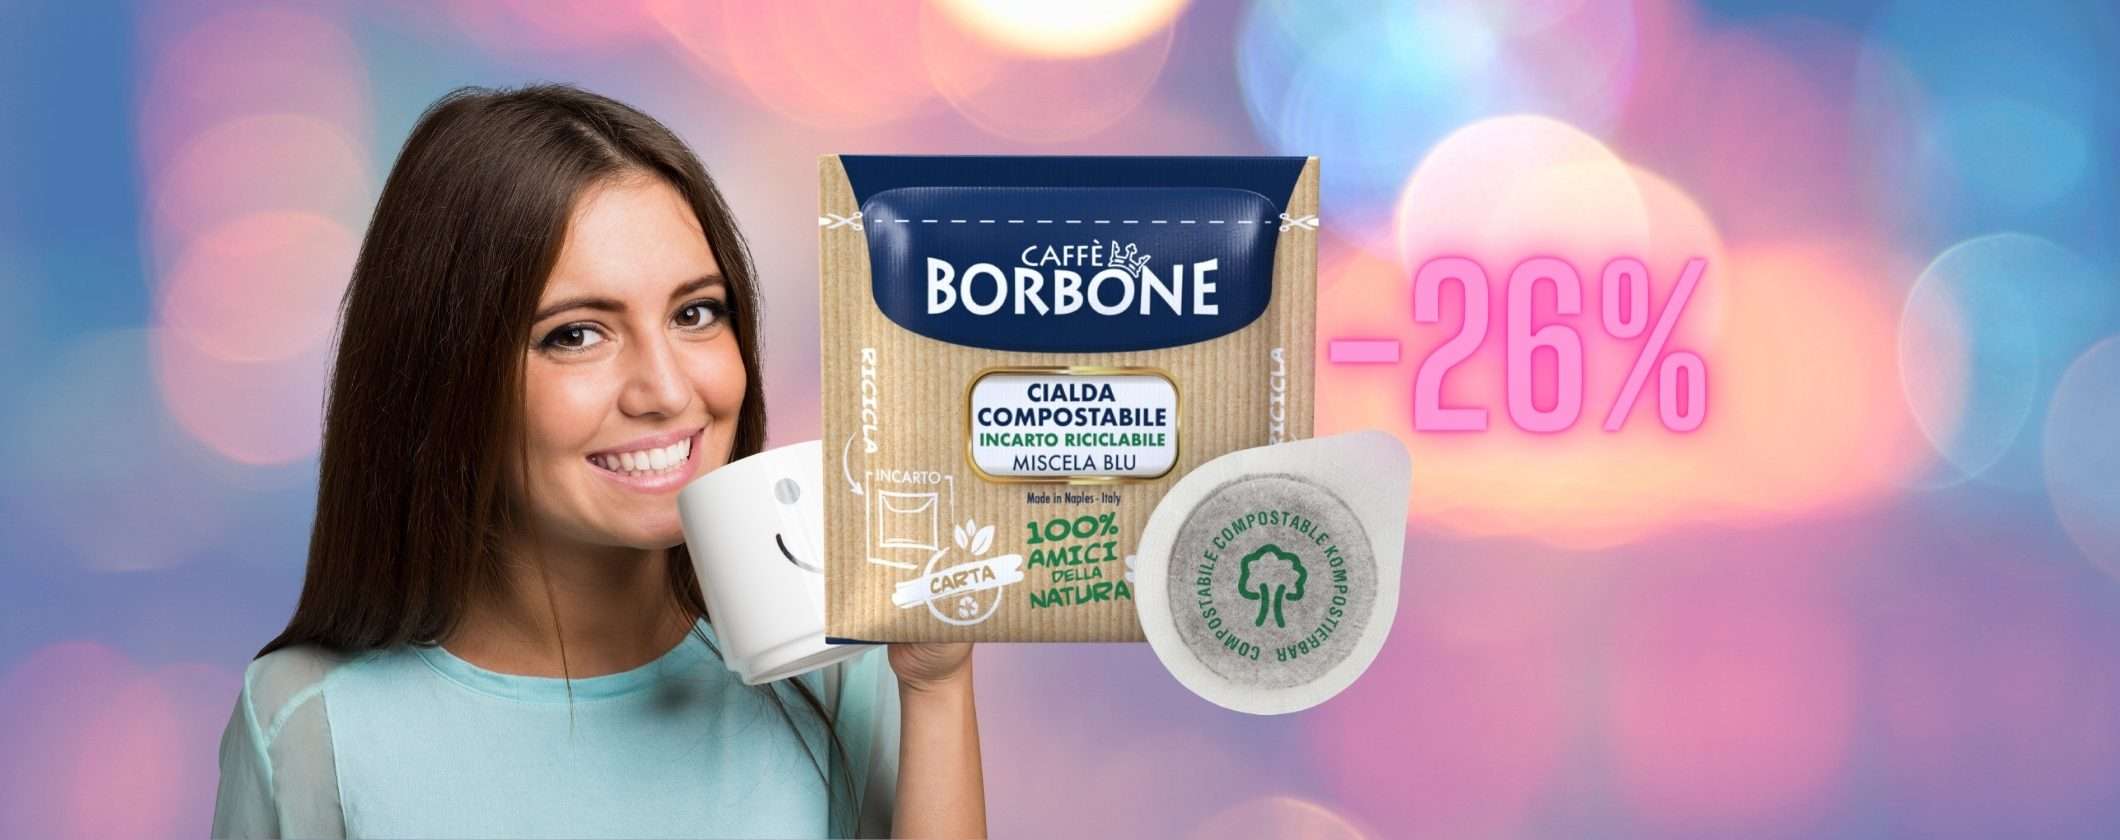 Cialde Caffè Borbone: su eBay in SCONTO 26%